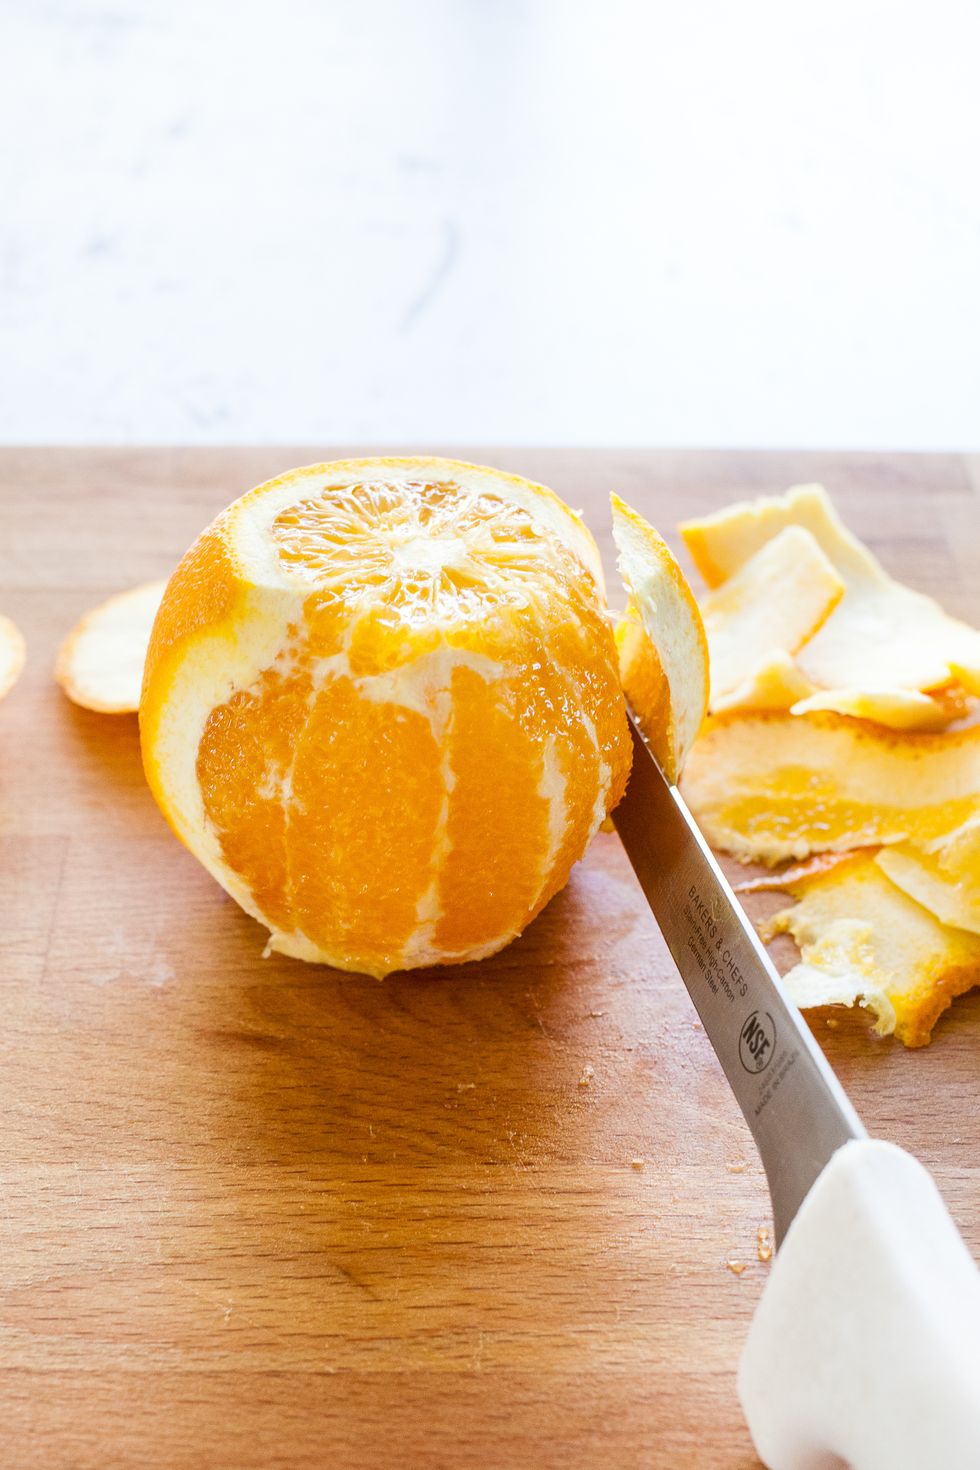 How to Segment an Orange